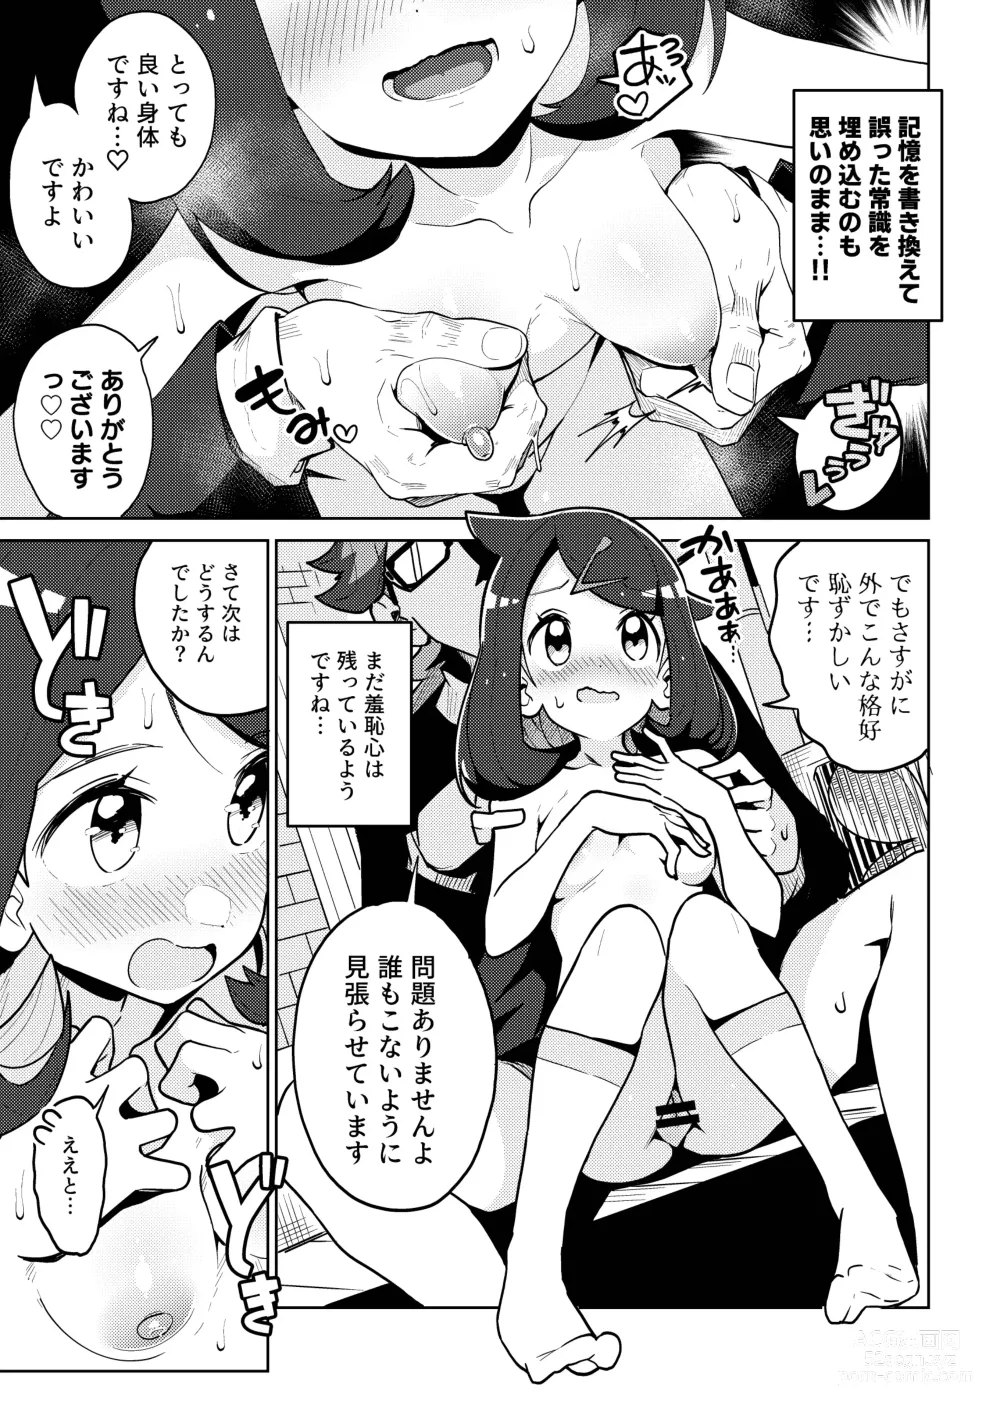 Page 9 of doujinshi Psycho Power tte Nan desu ka?